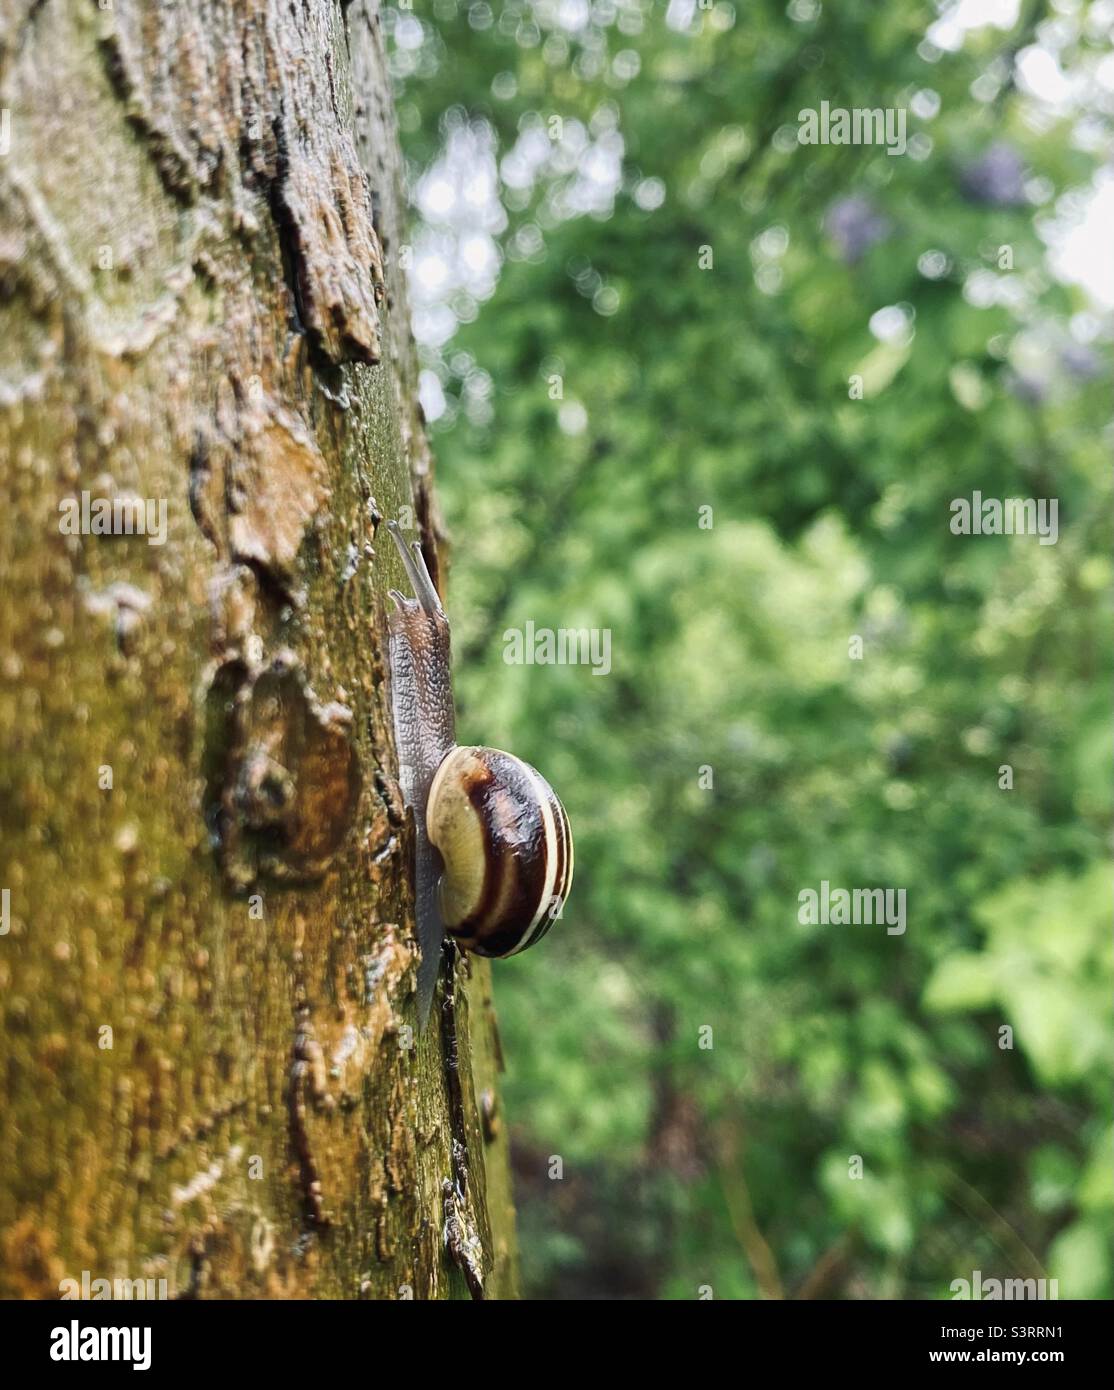 Beruhigendes Naturfoto, Schnecke klettert nach einem regnerischen Tag auf den Baum Stockfoto